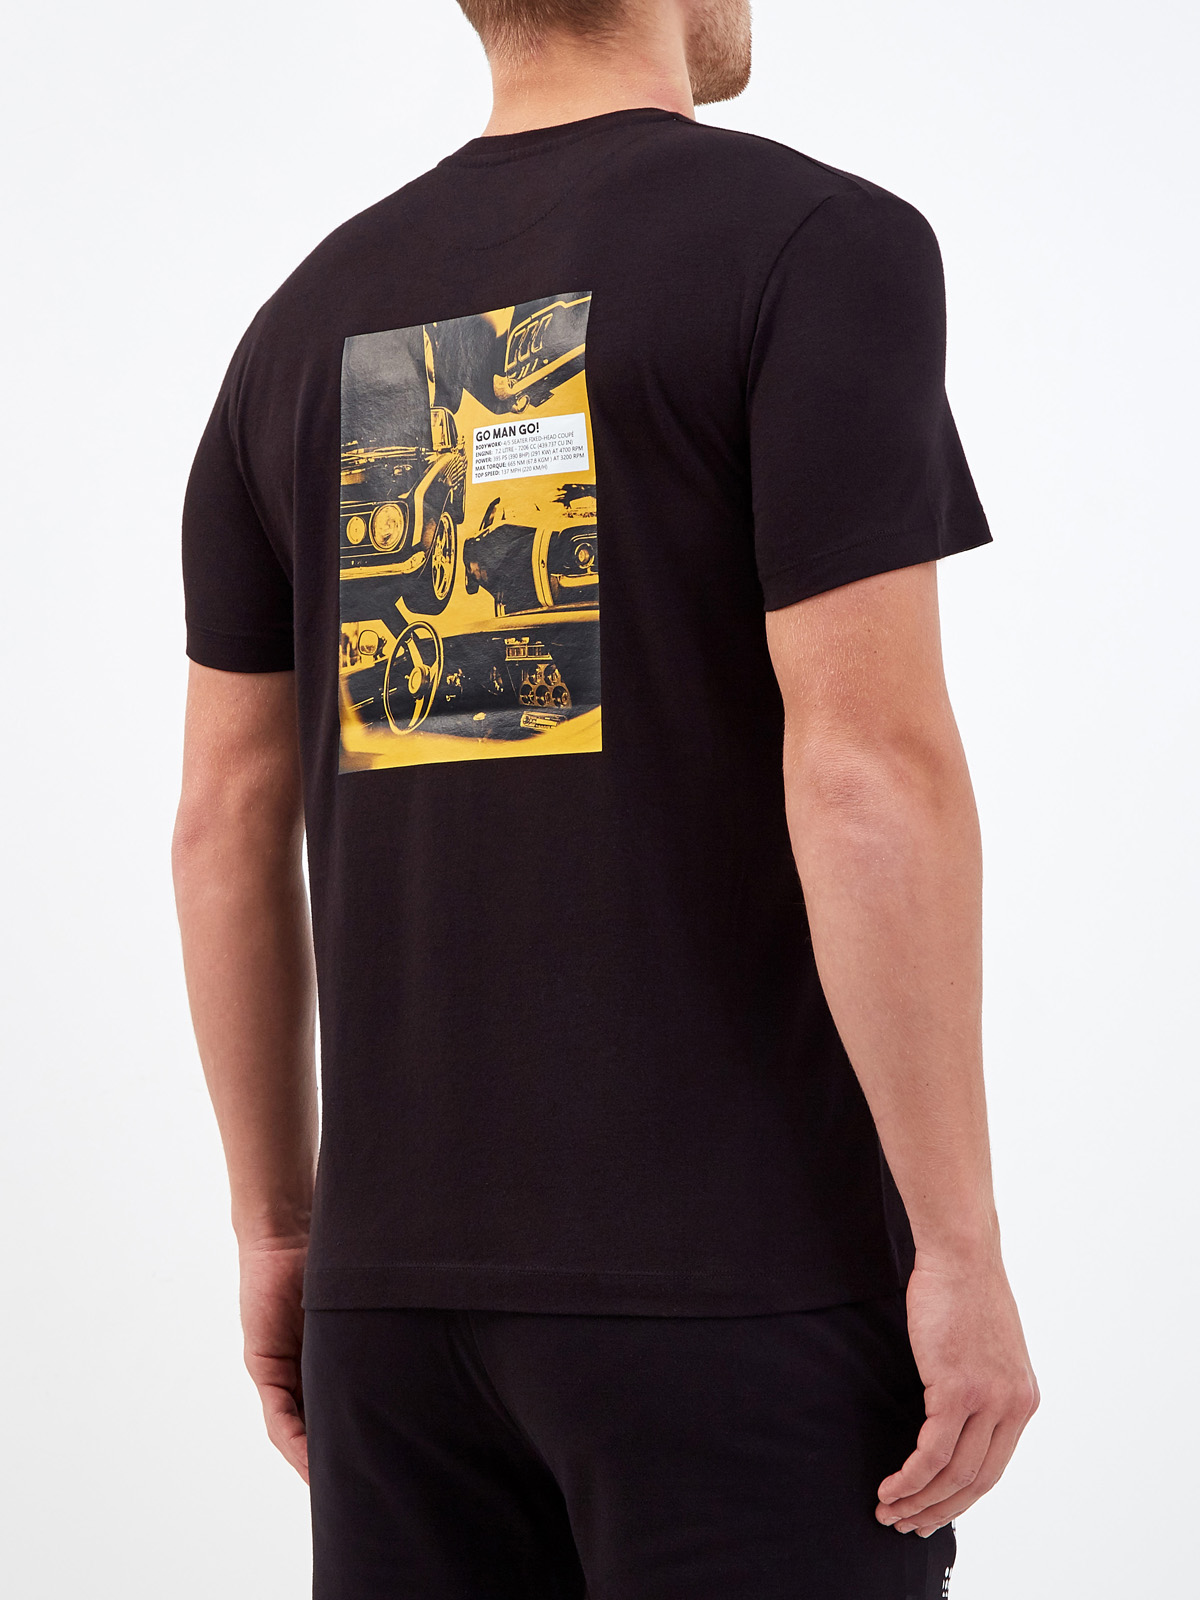 Хлопковая футболка с металлизированным логотипом и аппликацией BIKKEMBERGS, цвет черный, размер S;M;L;XL;2XL - фото 4